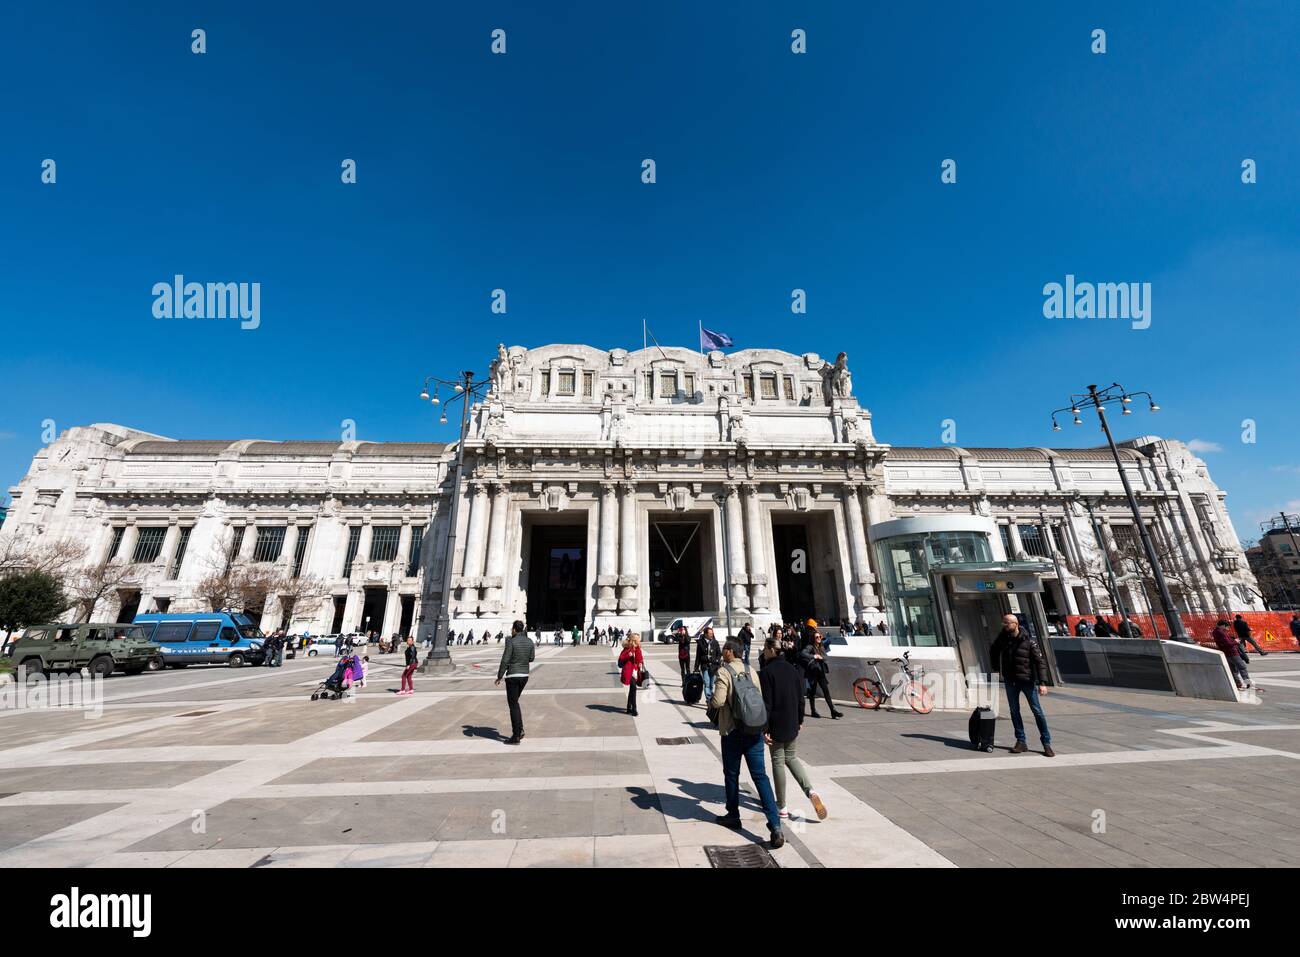 MILÁN, ITALIA - 16, MARZO de 2018: Imagen de gran angular de la fachada de la Estación Central de trenes de Milán, Italia Foto de stock